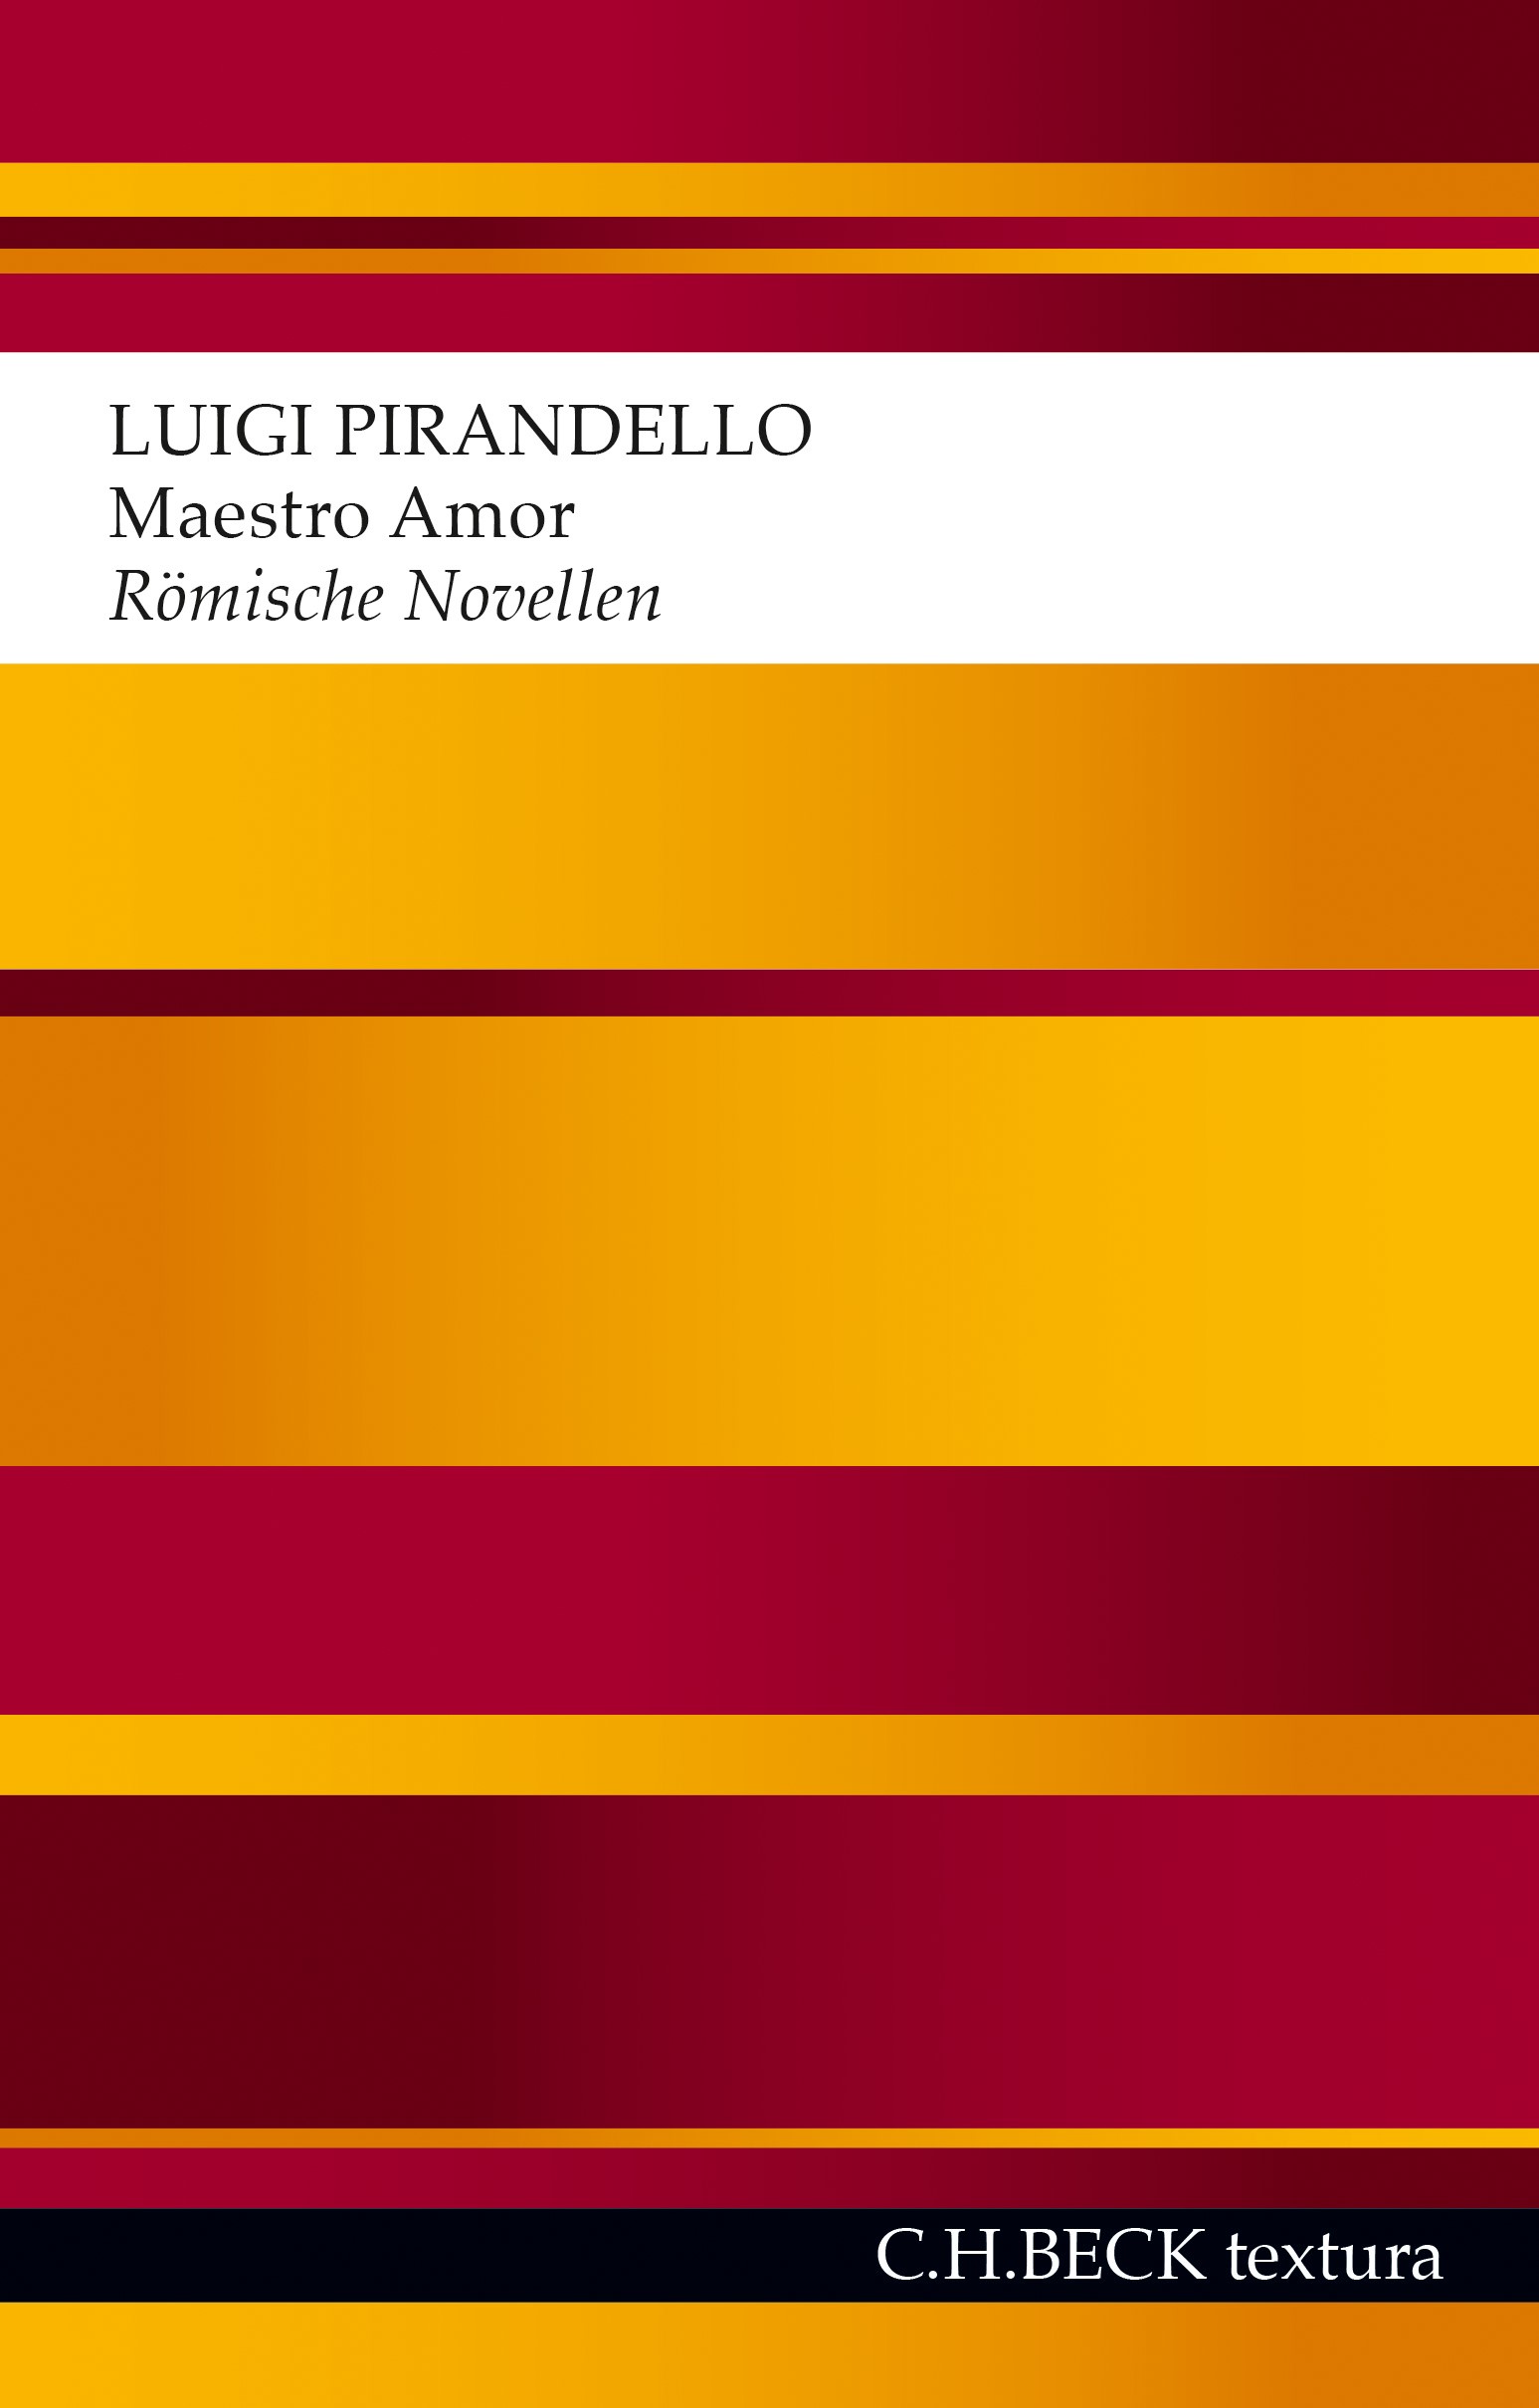 Cover: Pirandello, Luigi, Maestro Amor